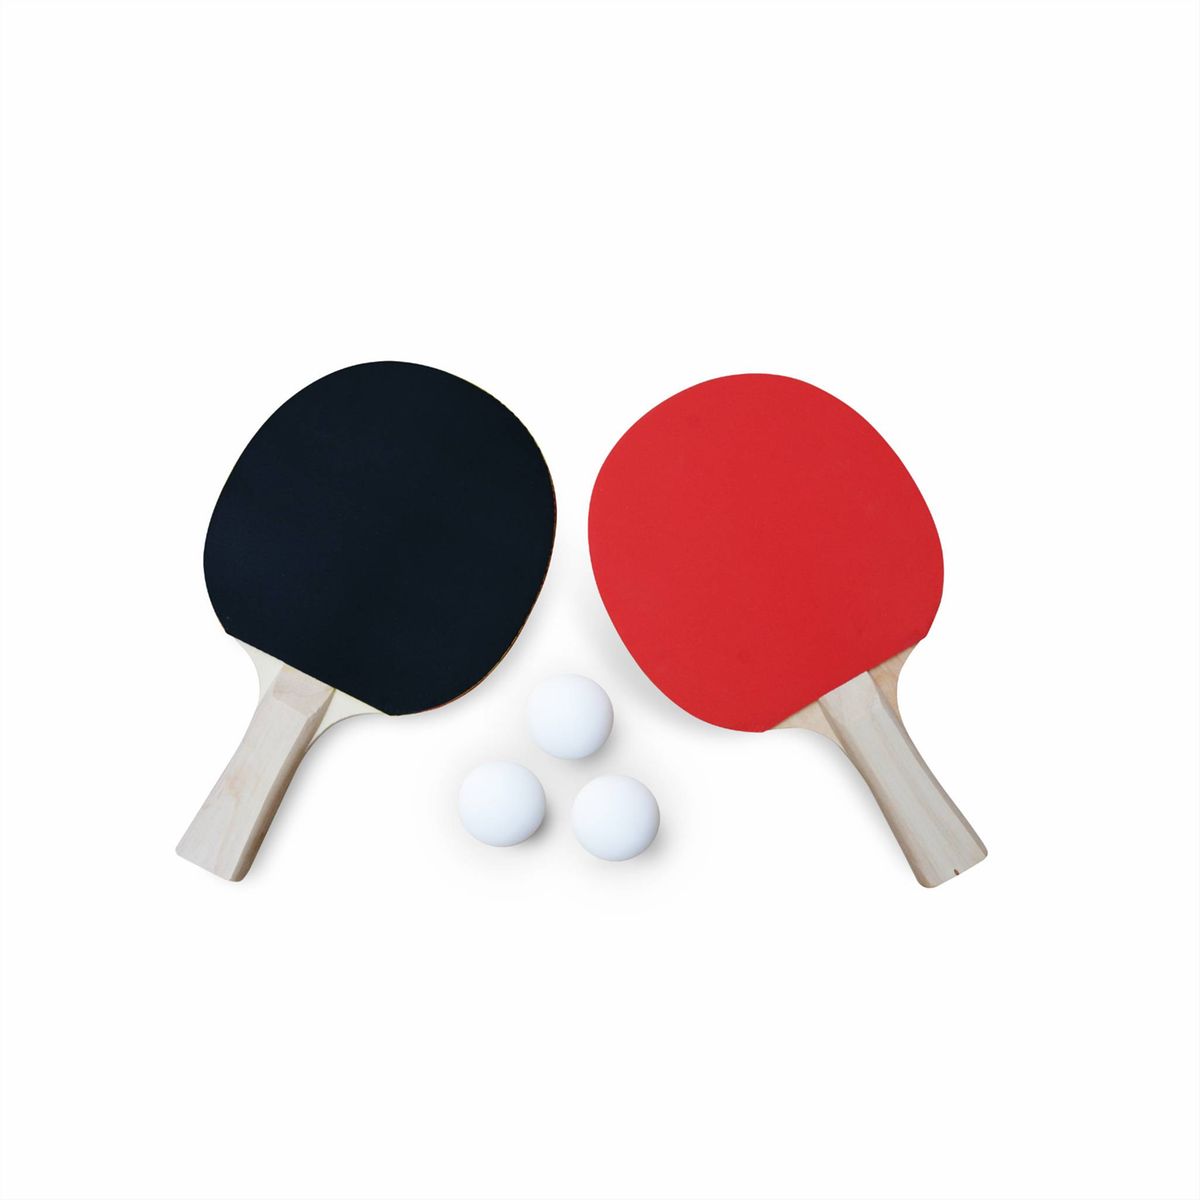 1 ensemble de raquette de ping-pong professionnelle à revêtement